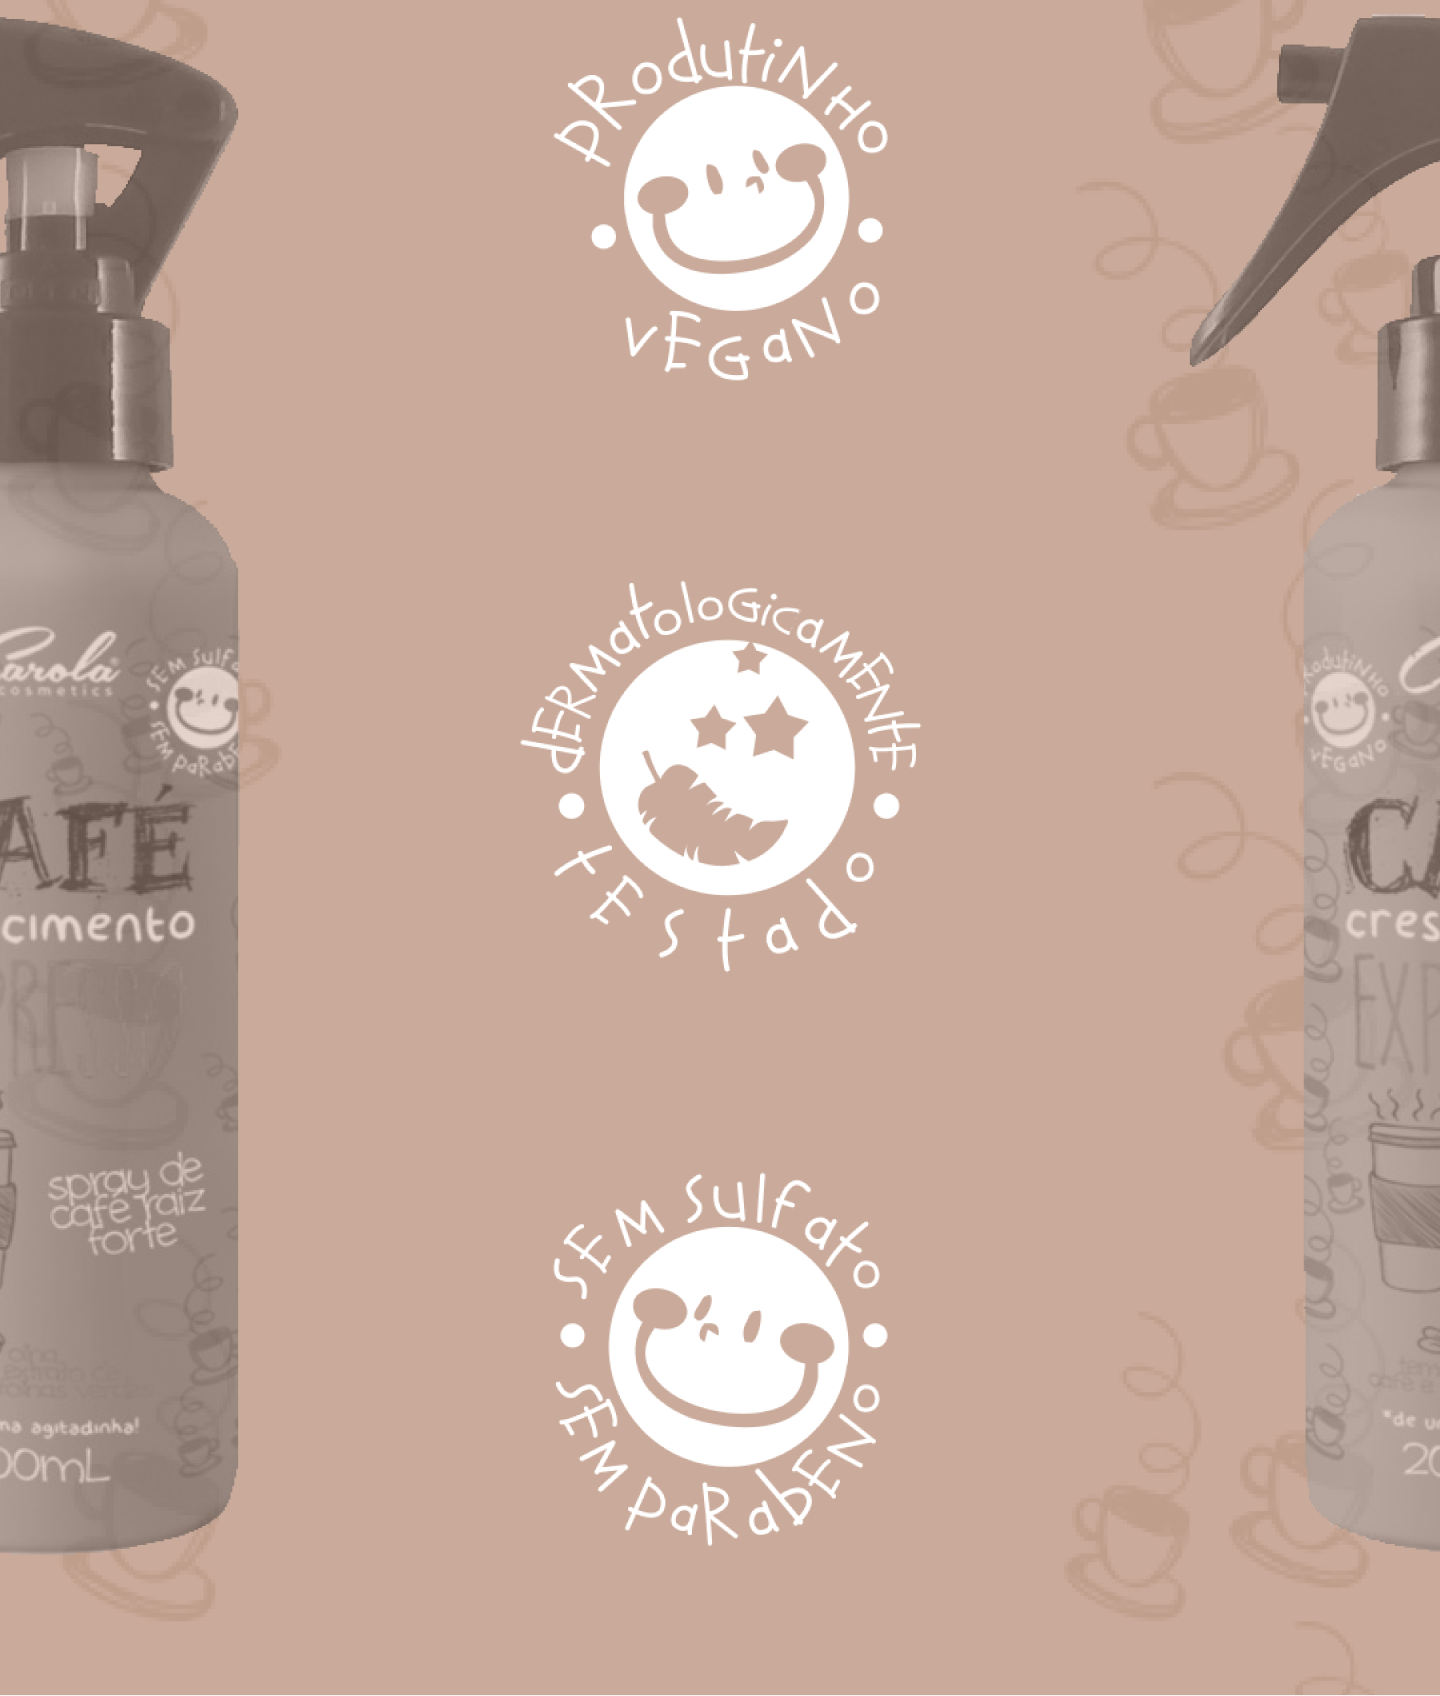 O tônico de café expresso é dermatologicamente testado, vegano e não possui sulfato e parabenos